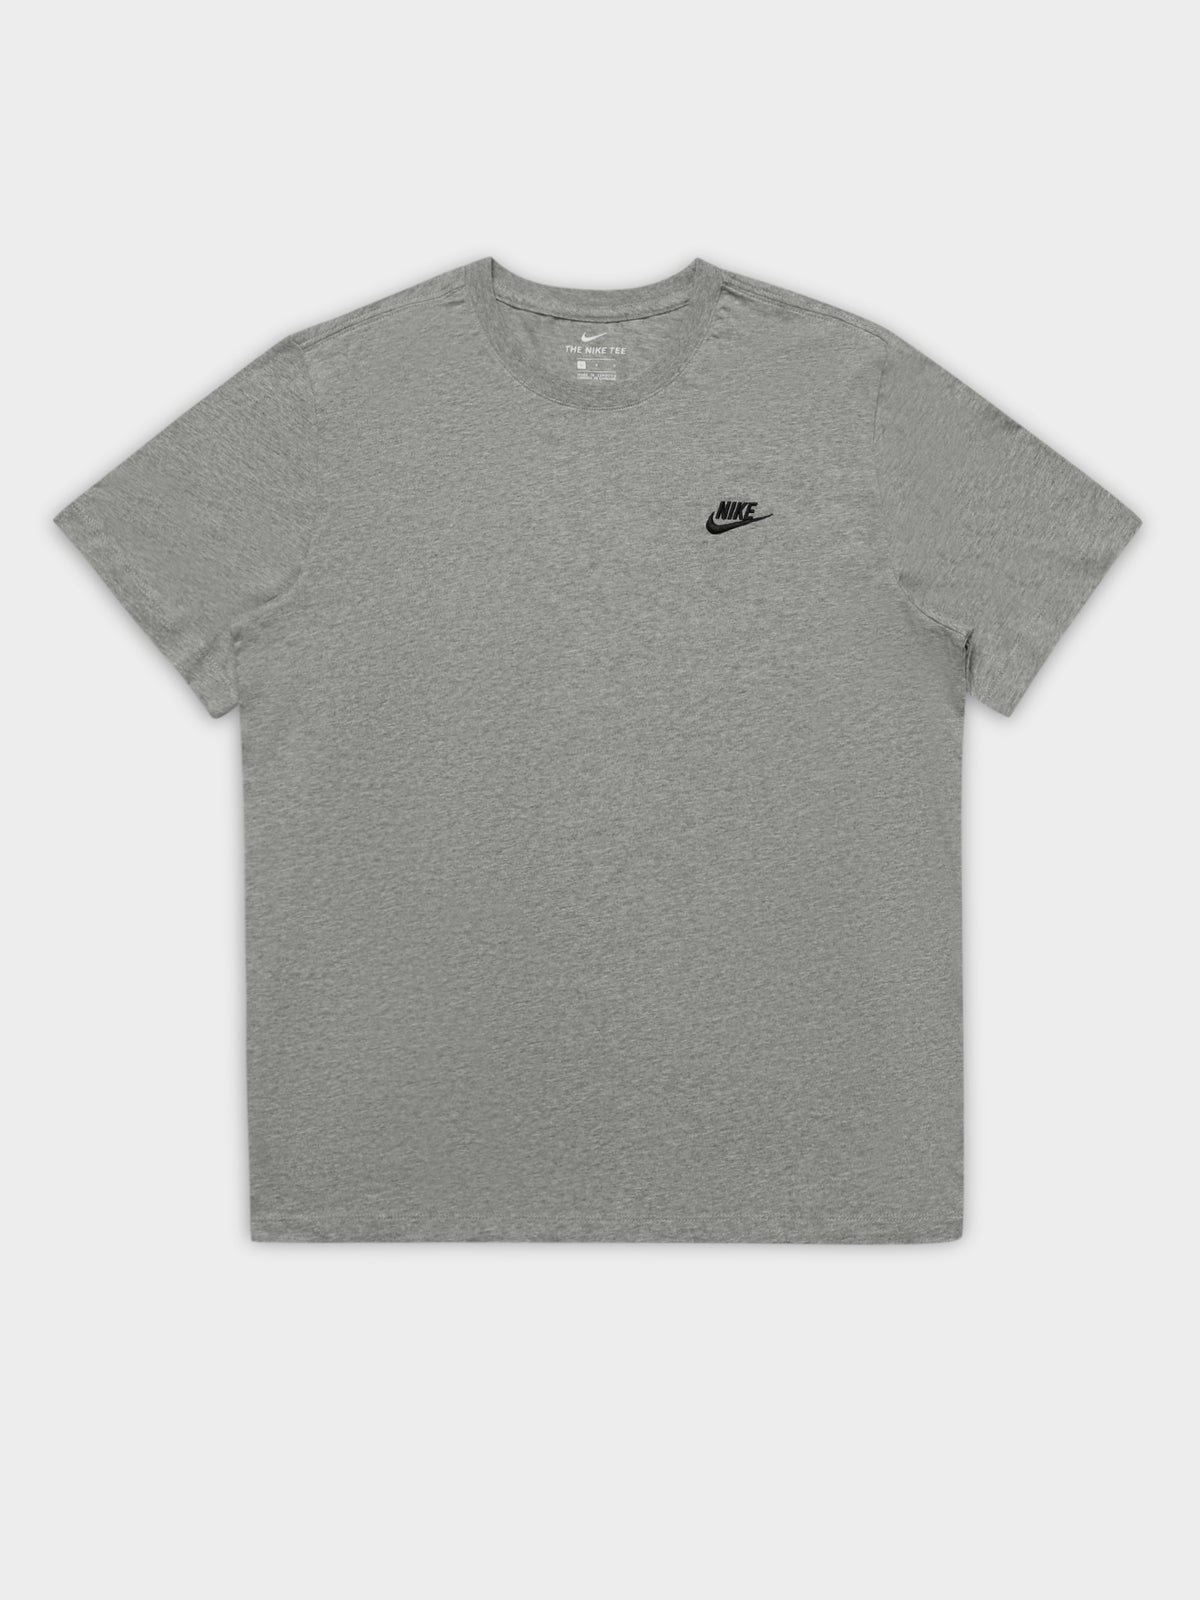 NSW Club Short Sleeve T-Shirt in Dark Grey